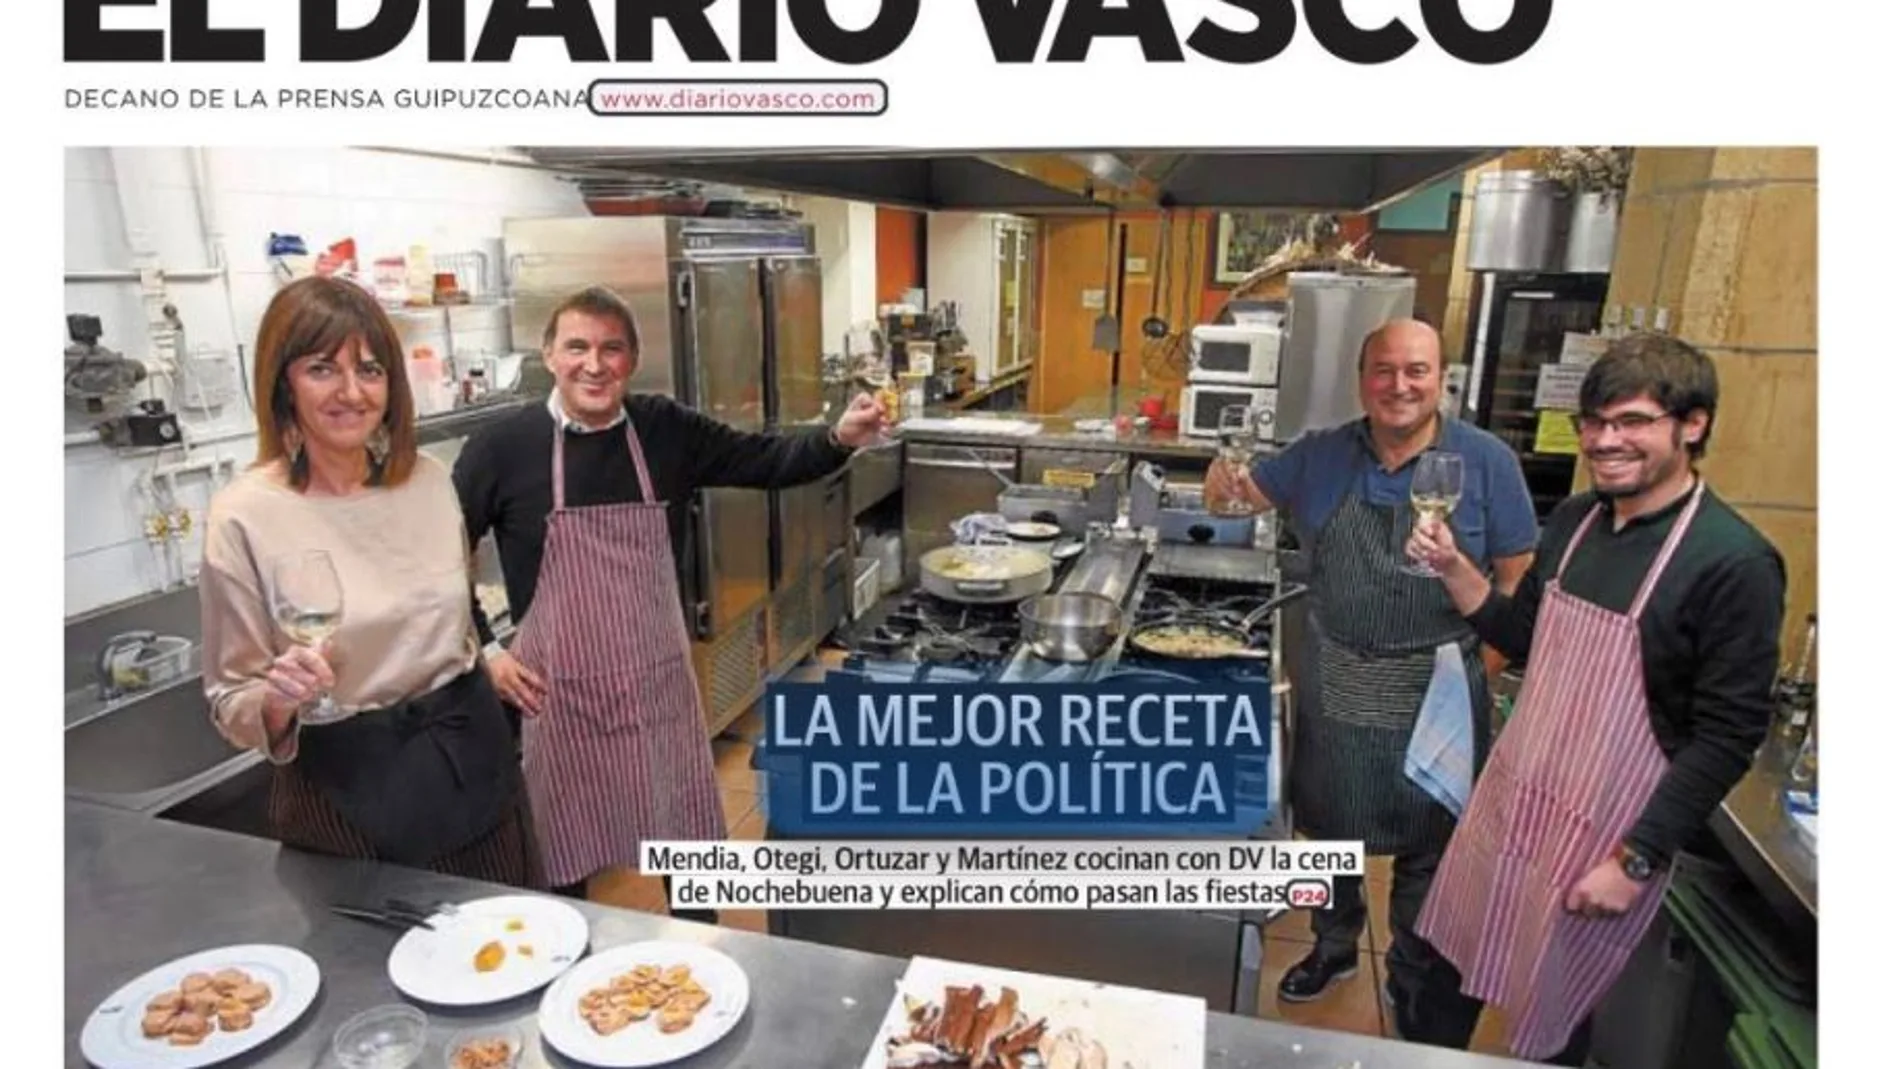 Portada de El Diario Vasco donde aparecen Mendia y Otegi junto a Ortuzar (PNV) y Lander Martínez (Podemos Euskadi)